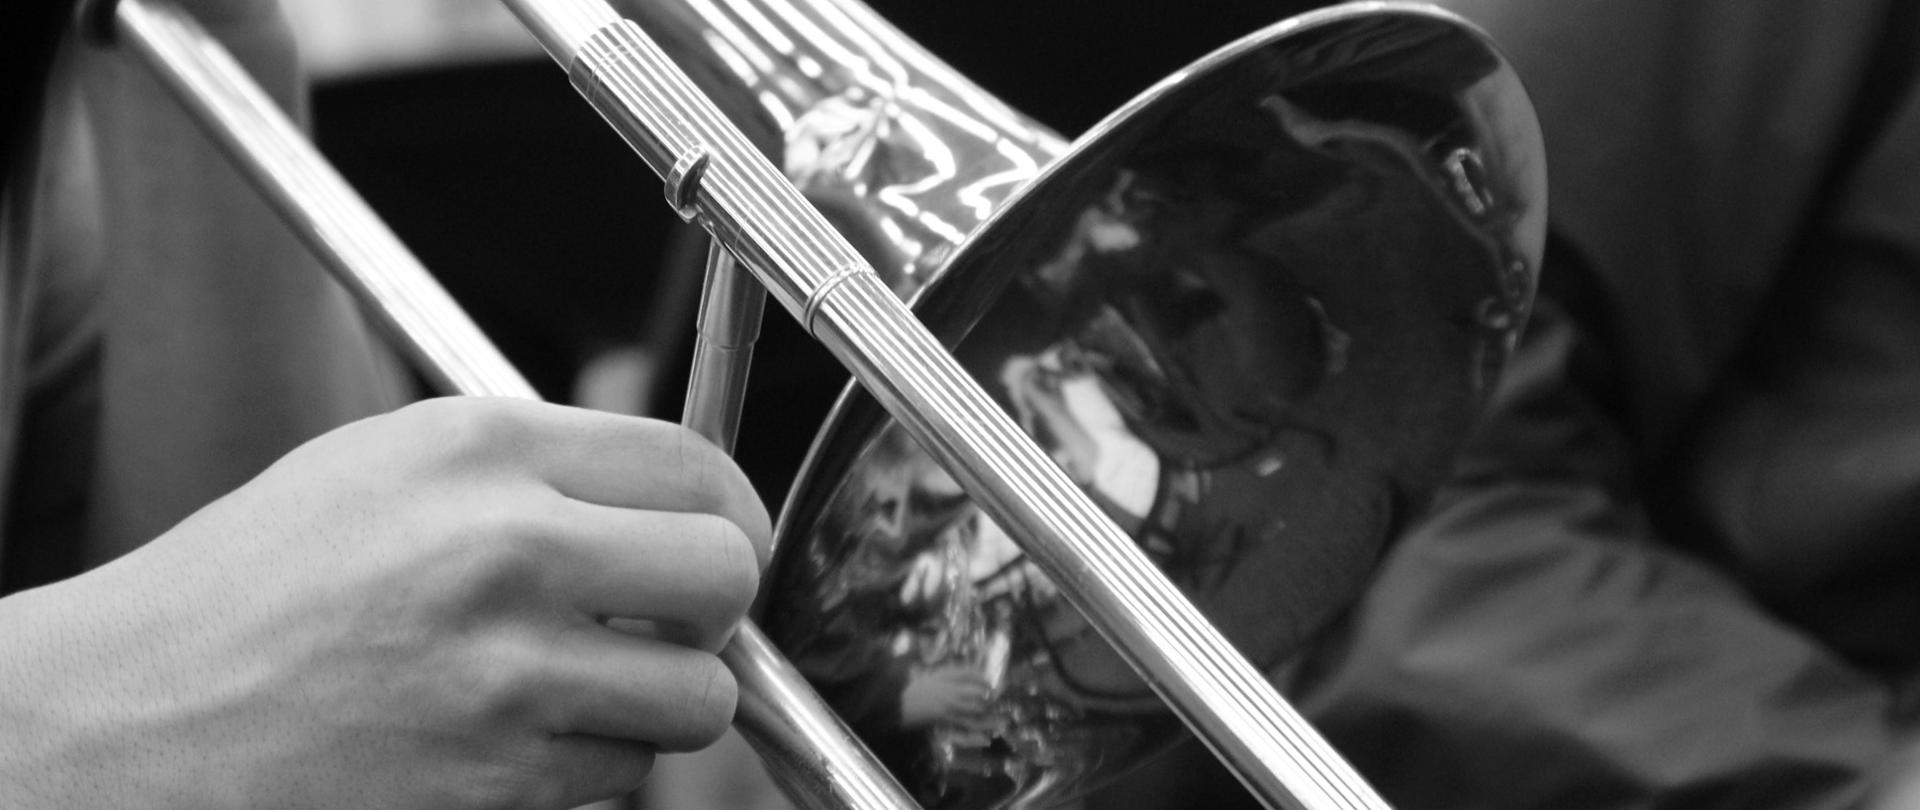 czarno-biała fotografia przedstawiająca czarę puzonu oraz dłoń trzymającą instrument